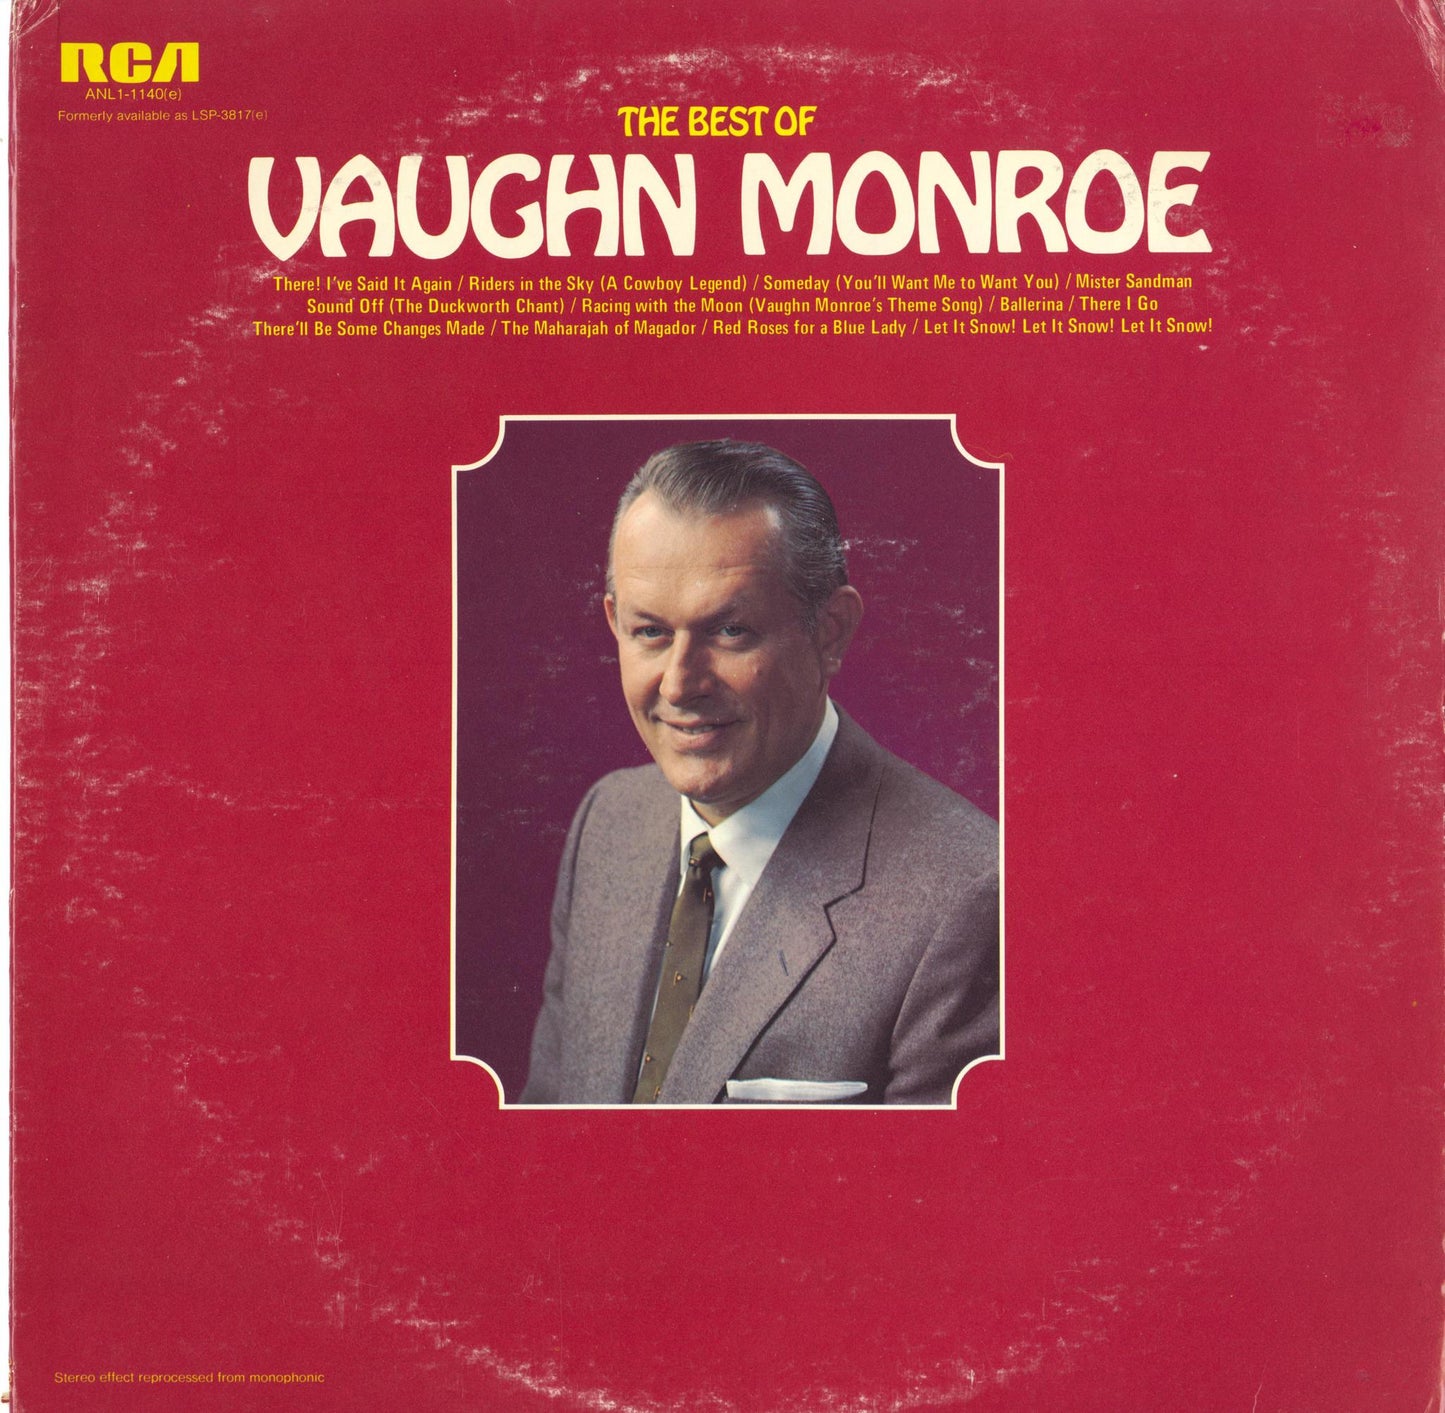 The Best of Vaughn Monroe